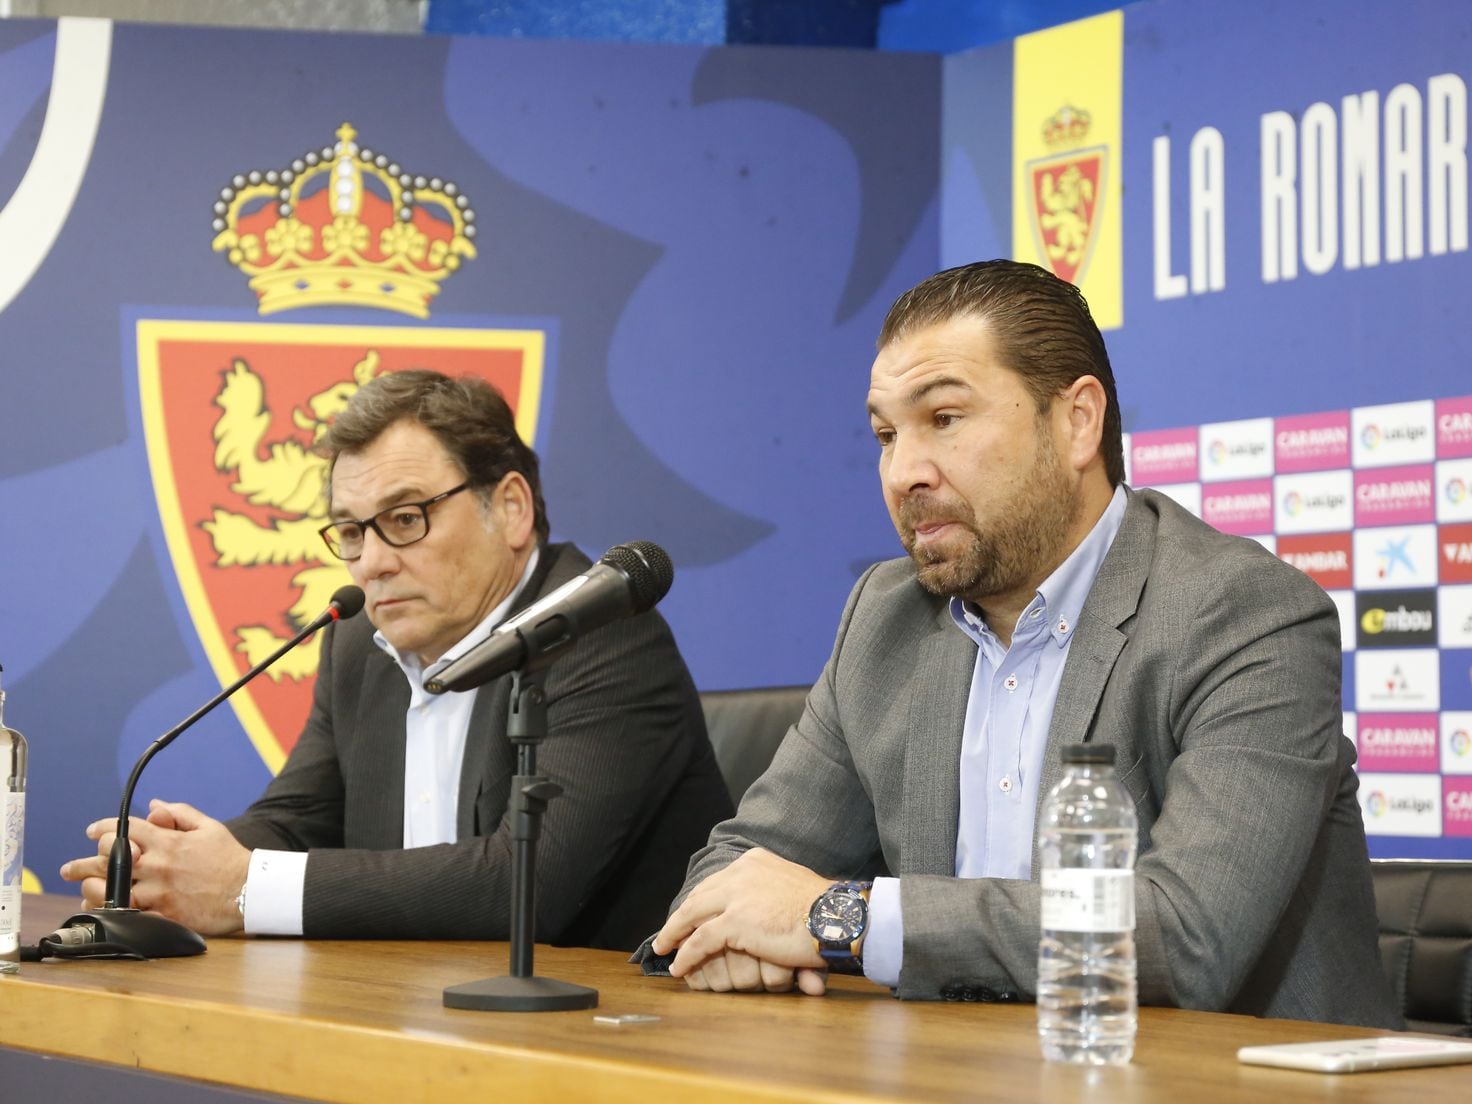 El Real Zaragoza vuelve a beneficios tras reducir un 81% sus